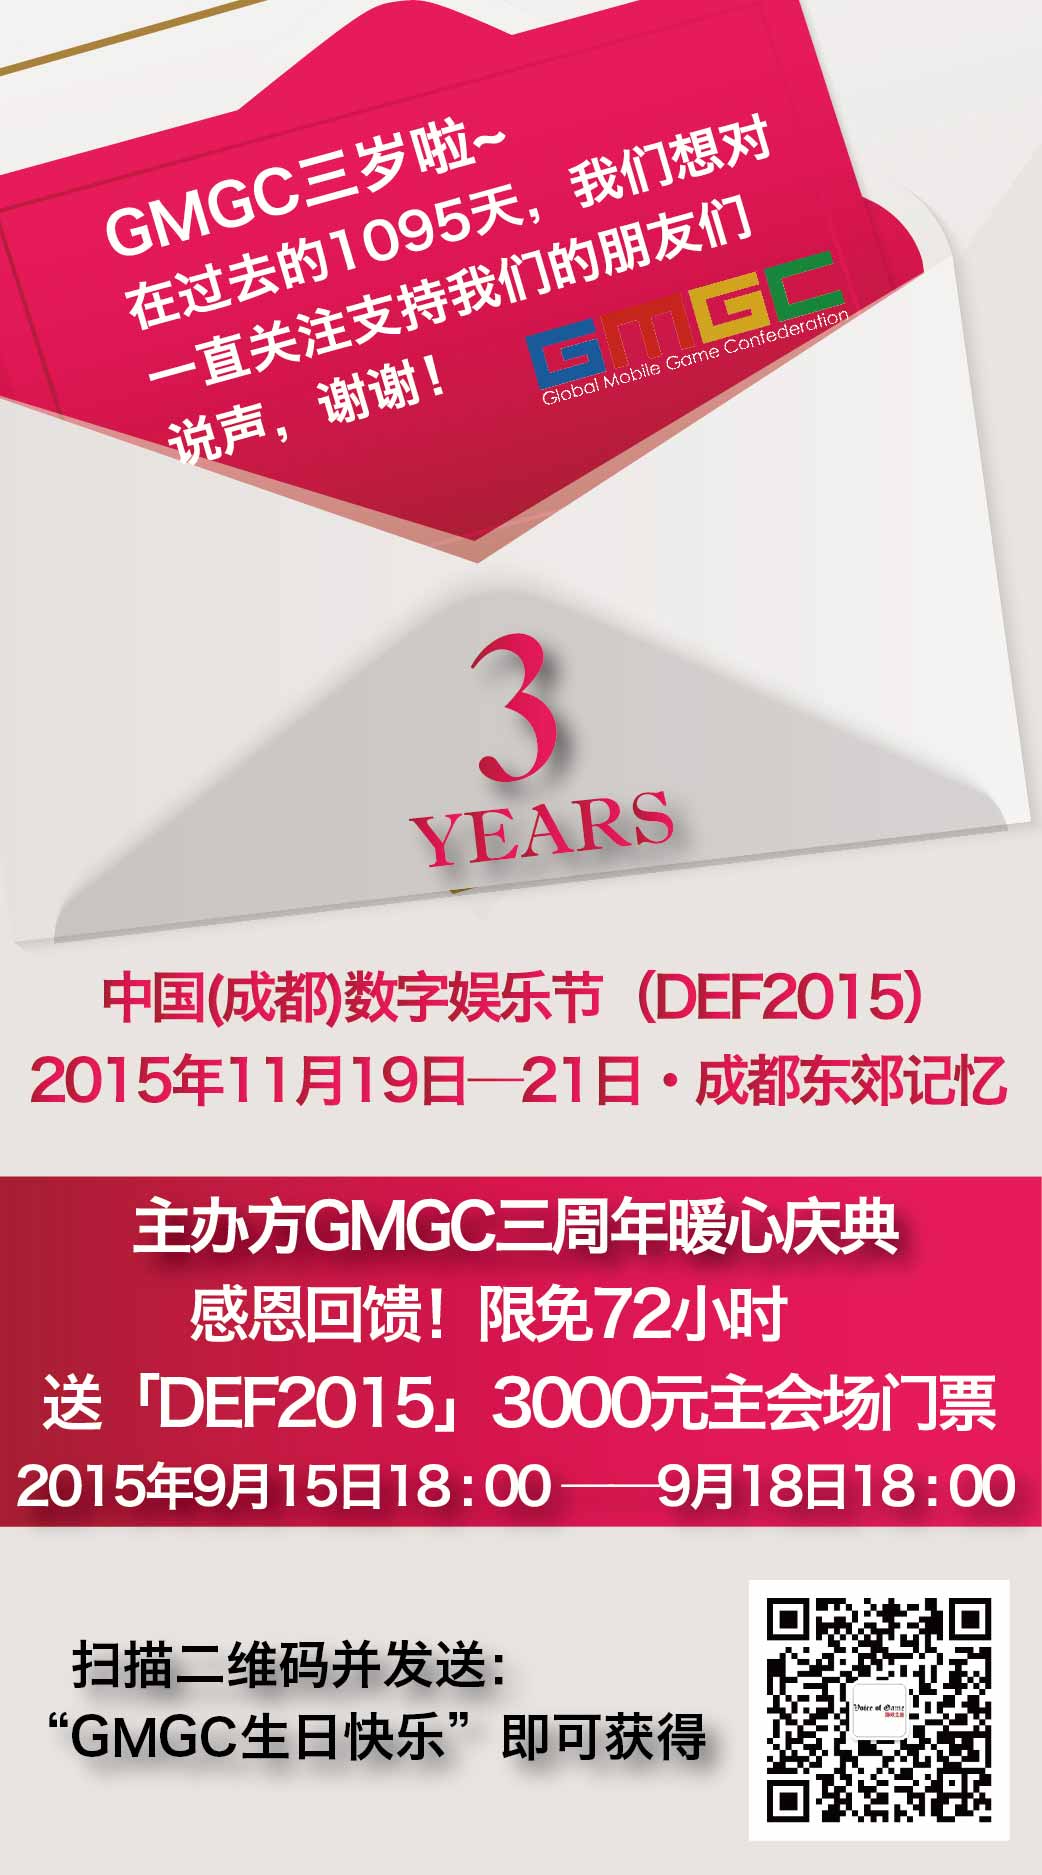 GMGC周年庆感恩！回馈DEF2015主会场门票[多图]图片2